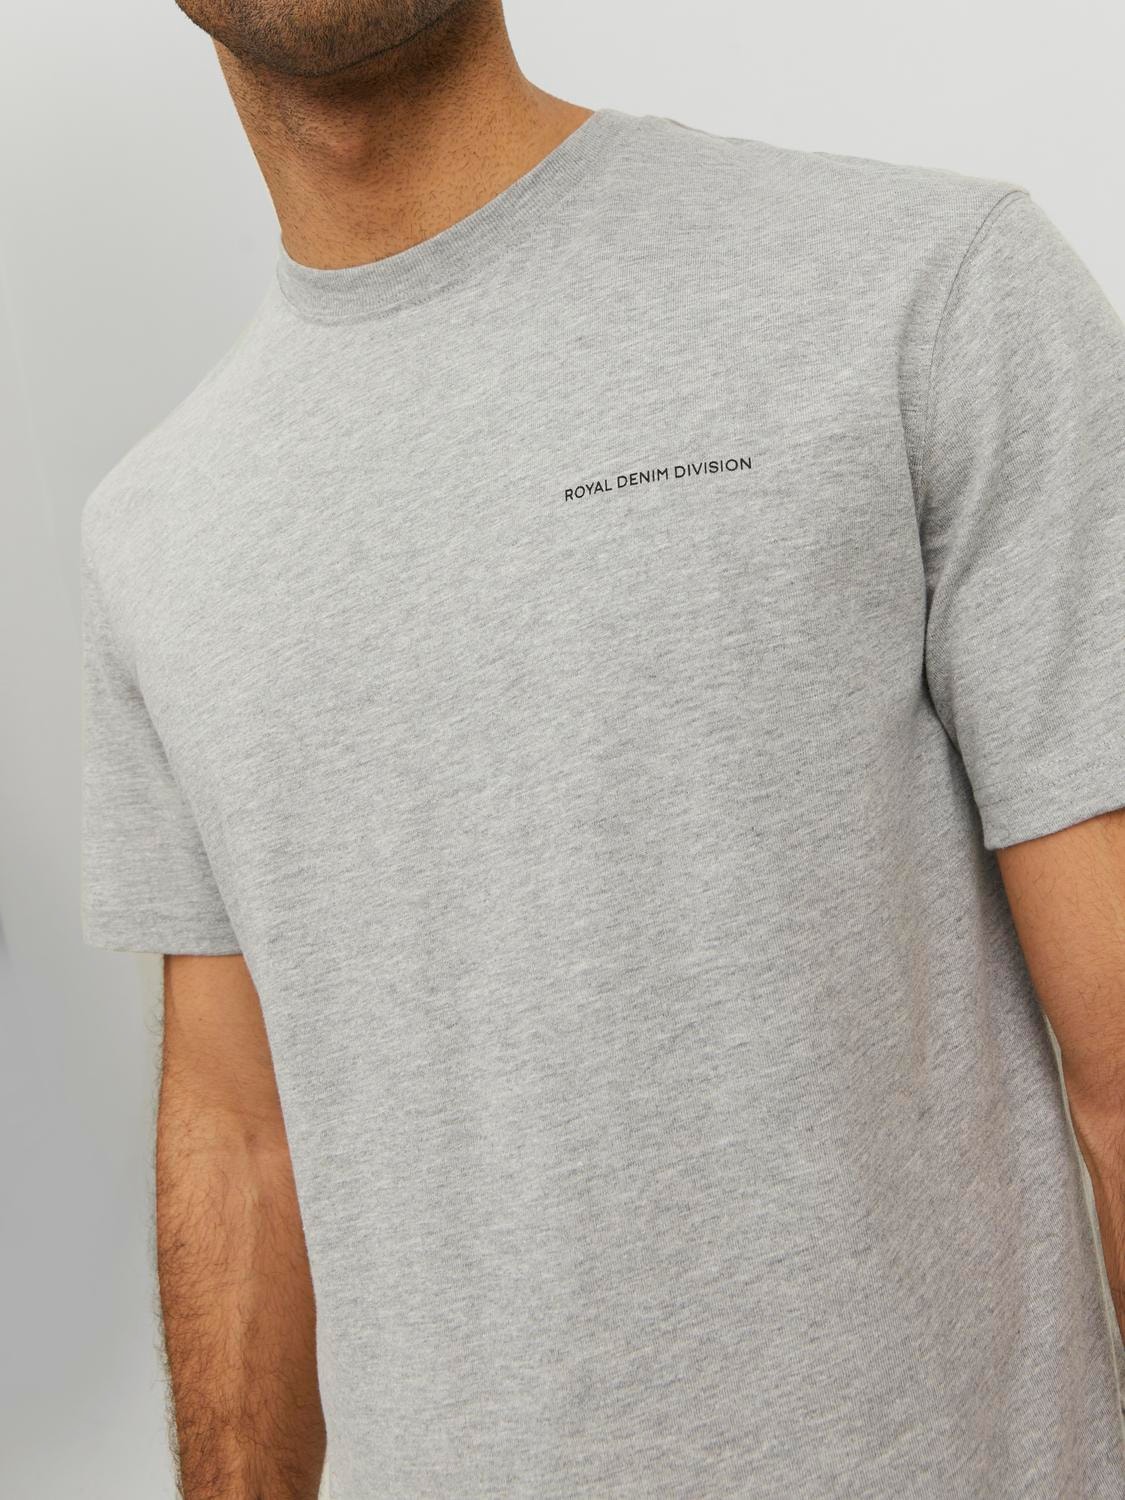 Jack & Jones RDD Gładki Okrągły dekolt T-shirt -Light Grey Melange - 12232815